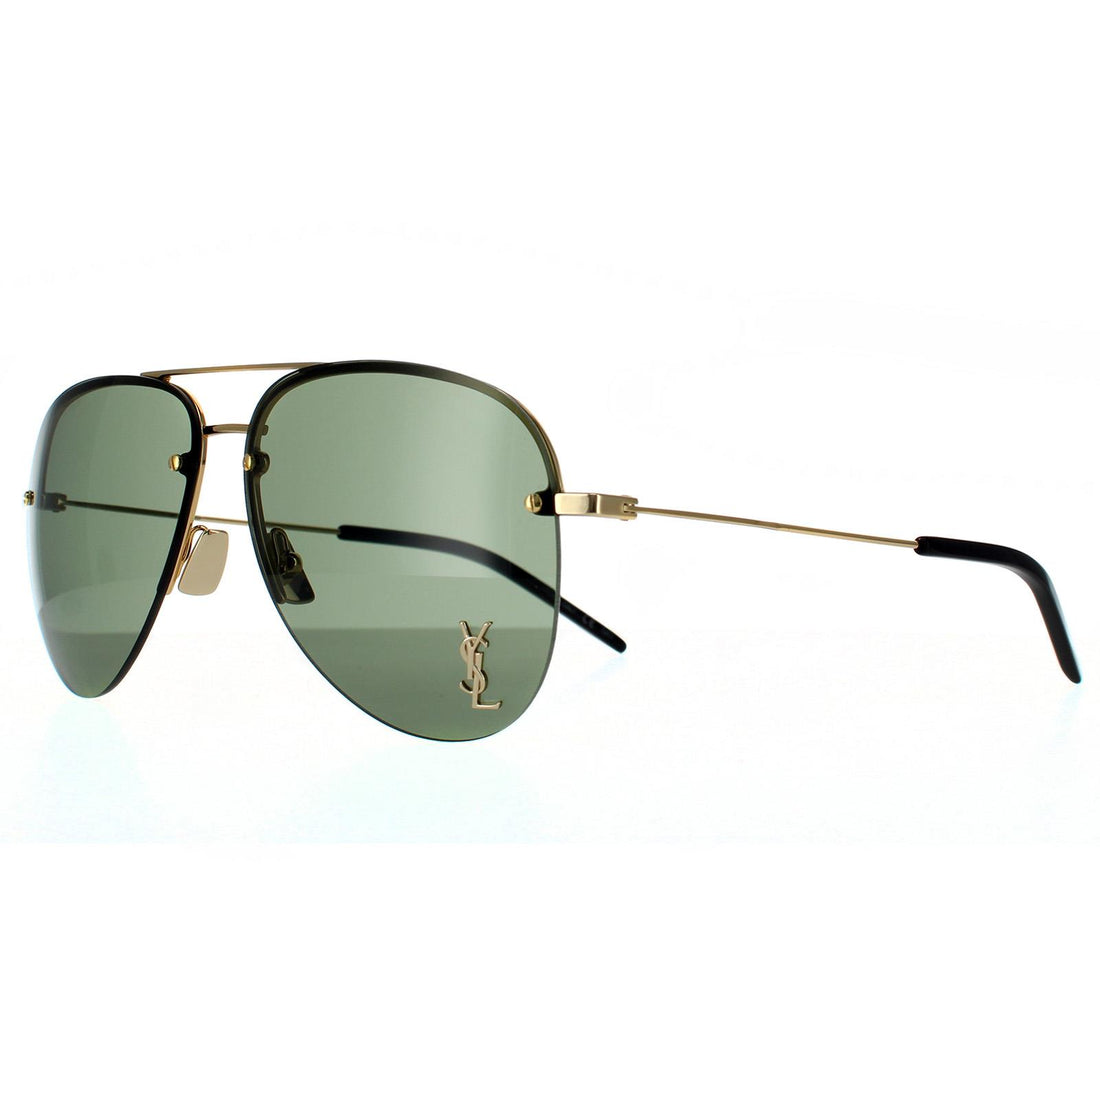 Saint Laurent Sunglasses SL CLASSIC 11 M 003 Gold Green